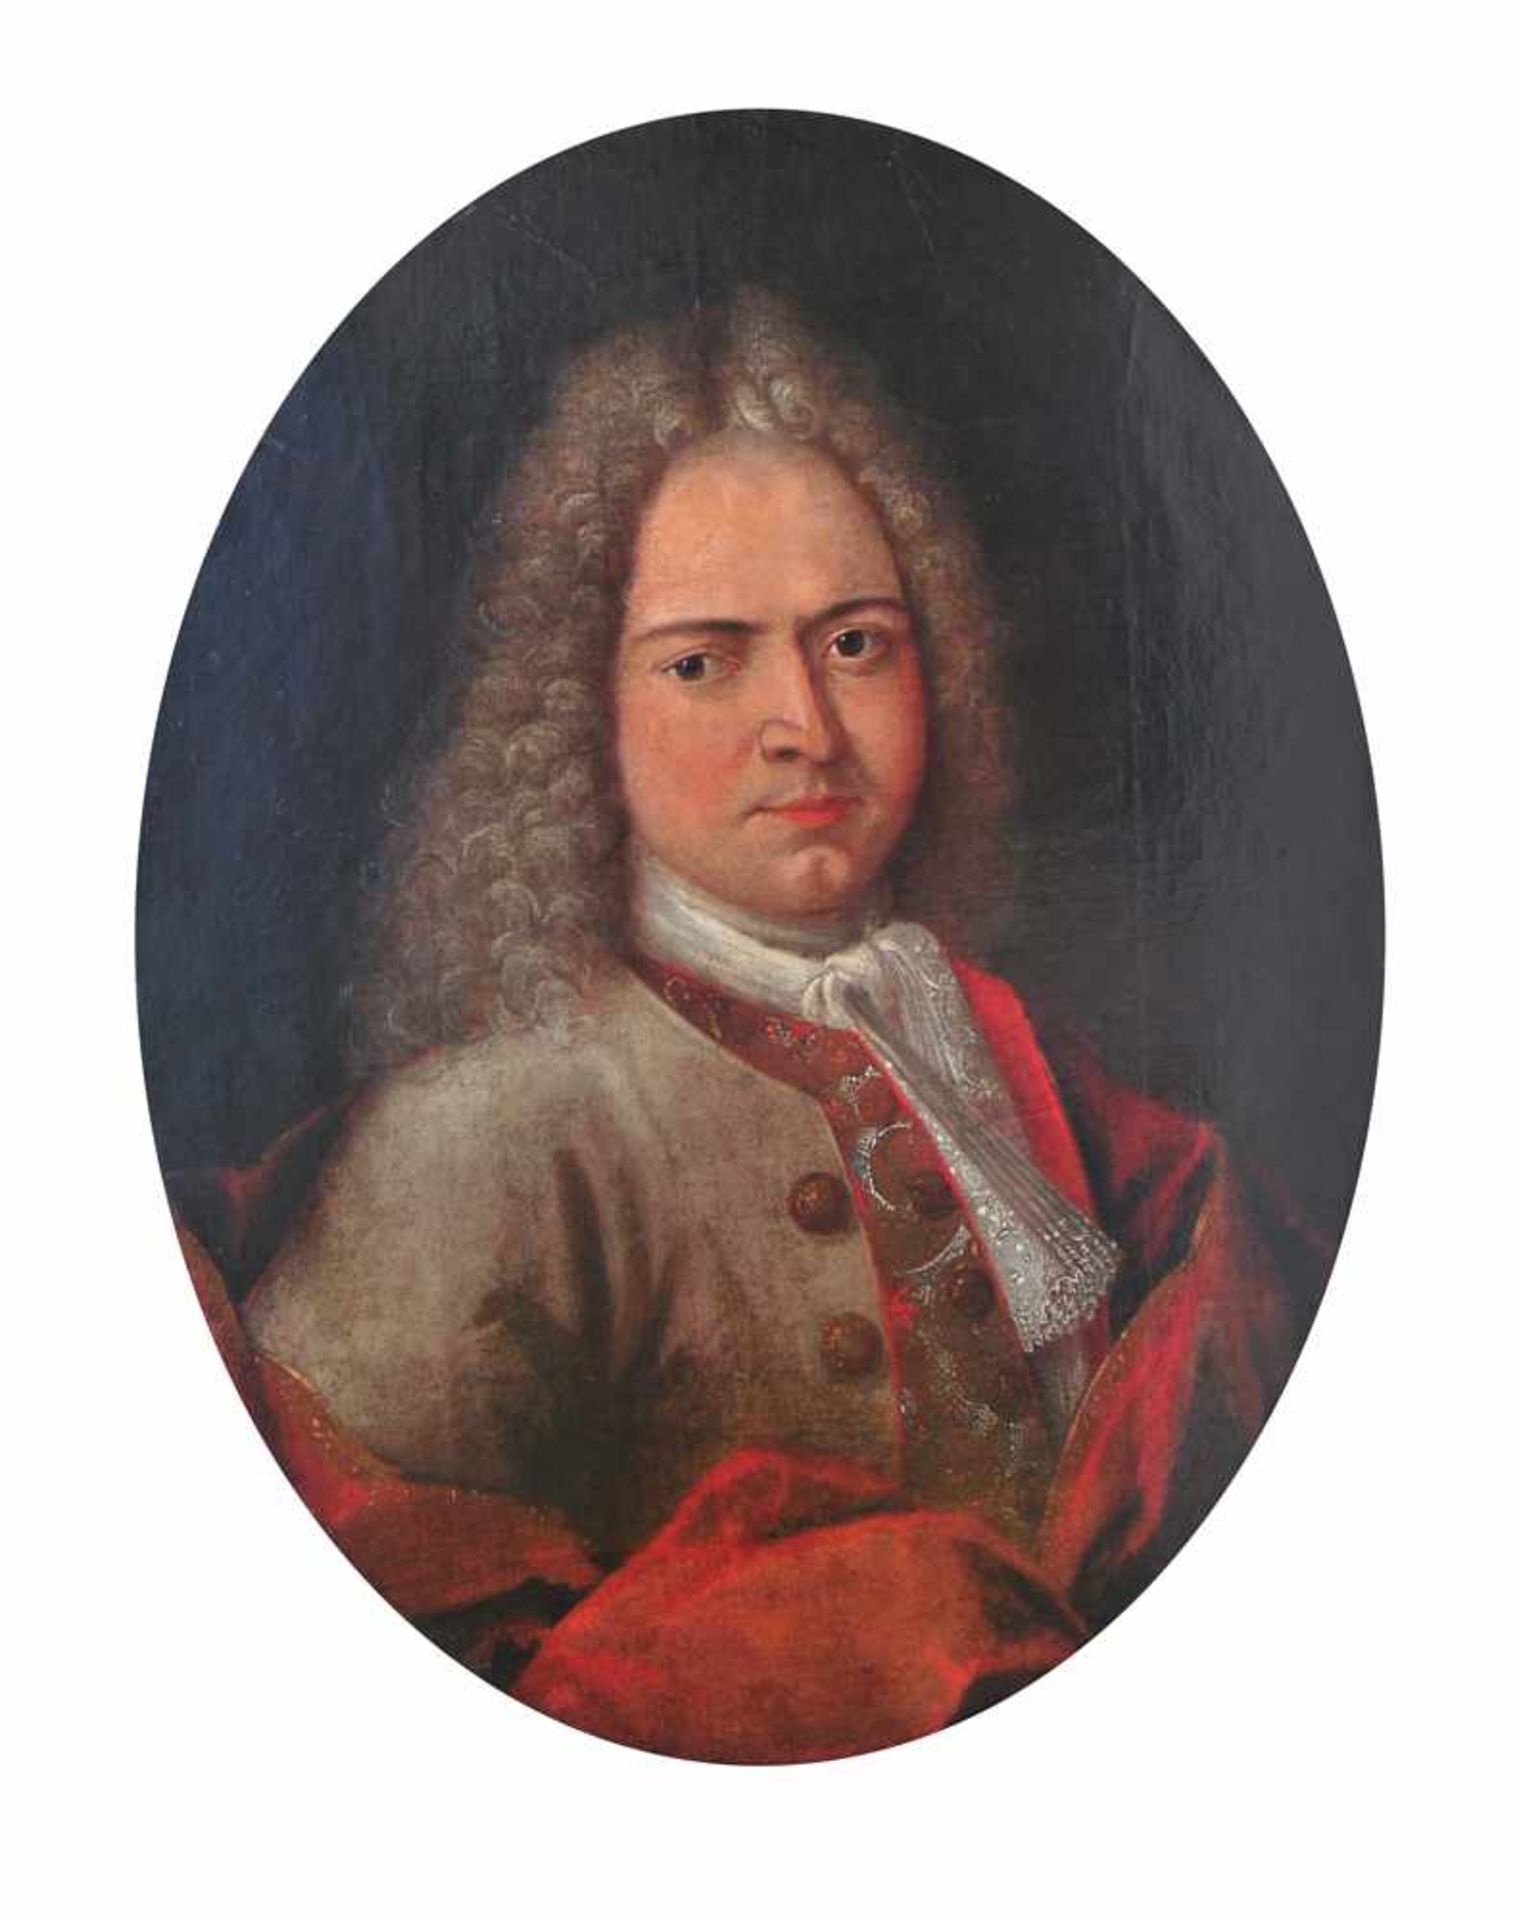 Herrenportrait 18. Jh.Ovales Portrait eines Herrn mit Allongeperücke und rotem Umhang. Öl/Lwd. H: 69